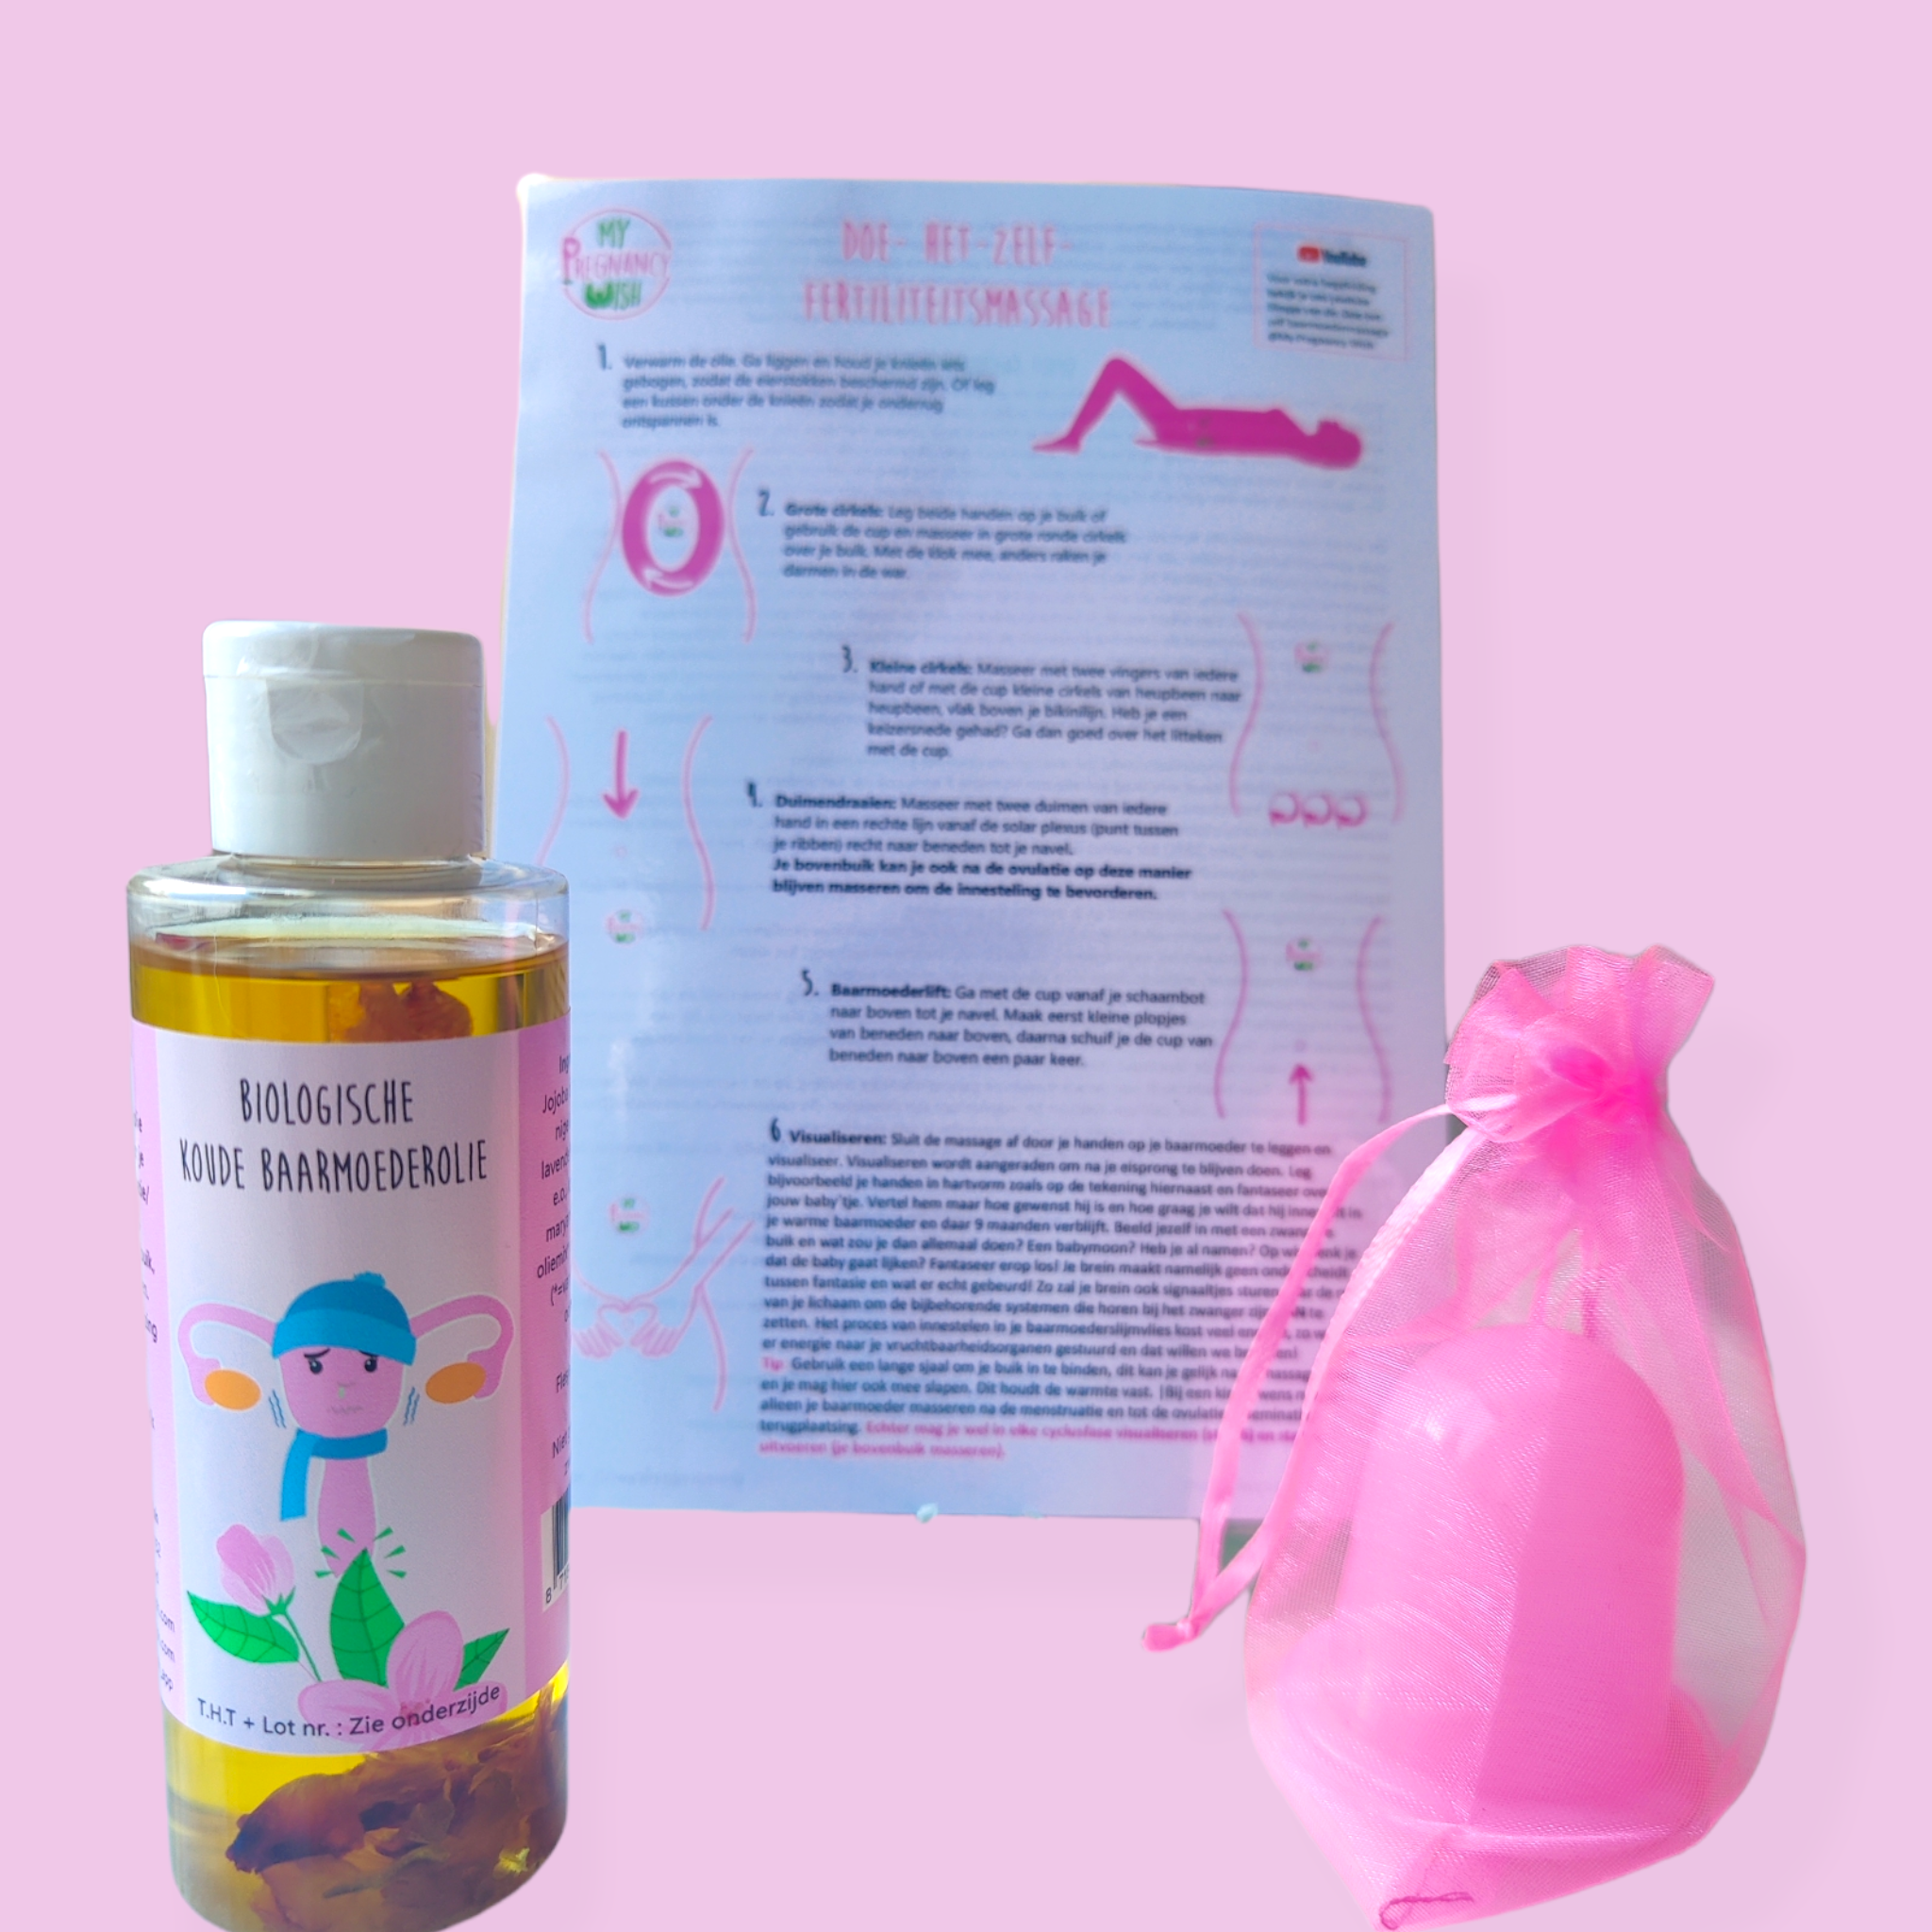 Minnaar bitter Begeleiden Koude baarmoeder massage kit - My Pregnancy Wish webshop